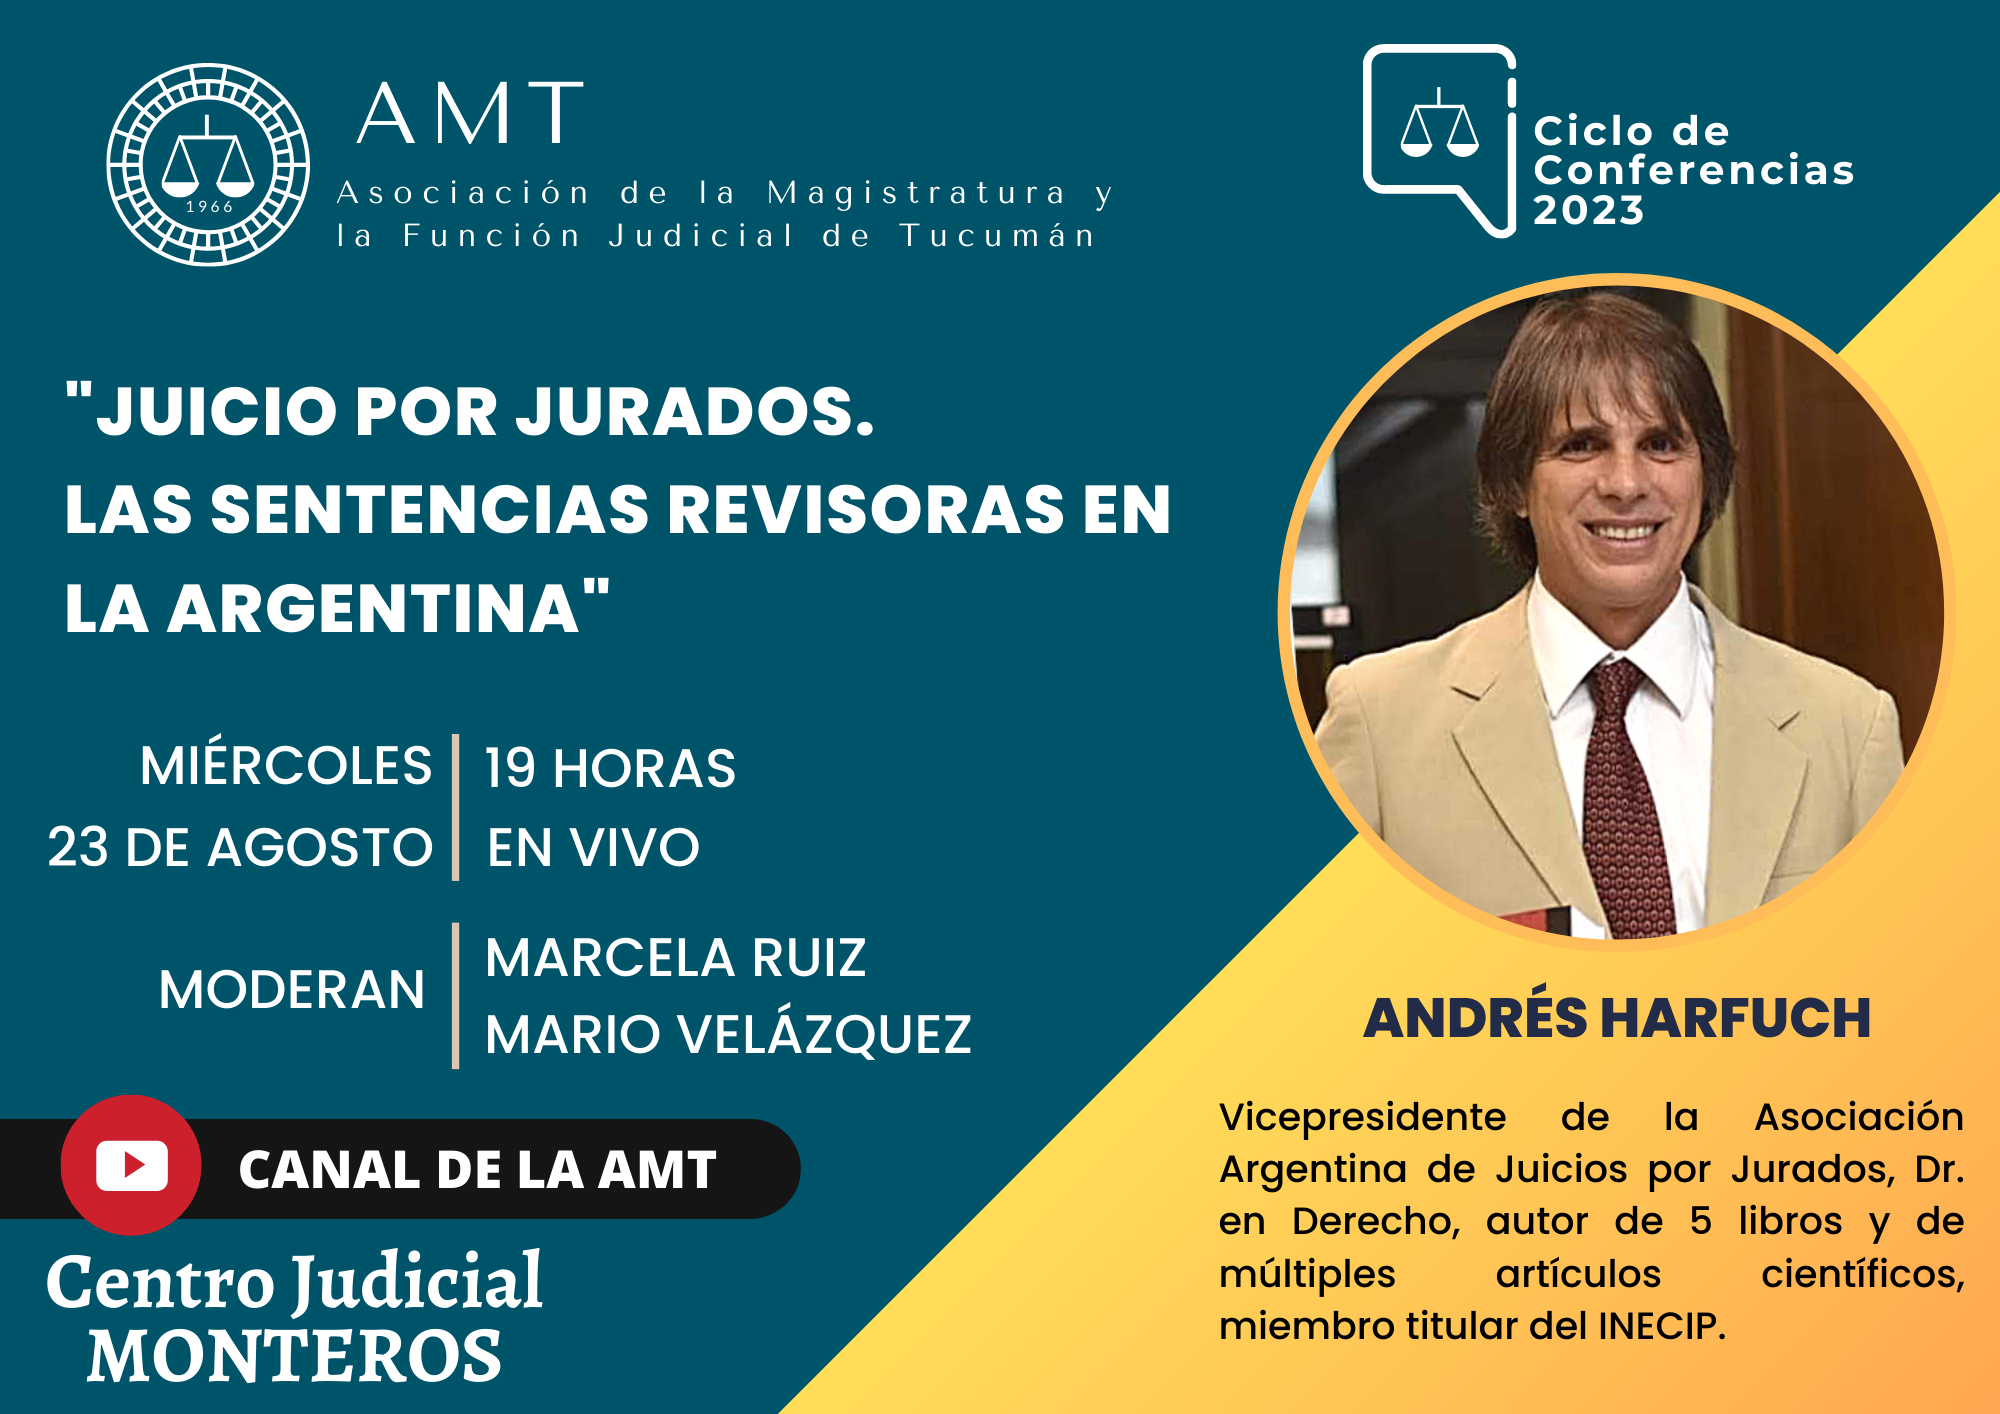 Vuelva a ver la conferencia de Andrés Harfuch: «Juicio por Jurados. Las sentencias revisoras en la Argentina»Vuelva a ver la conferencia de